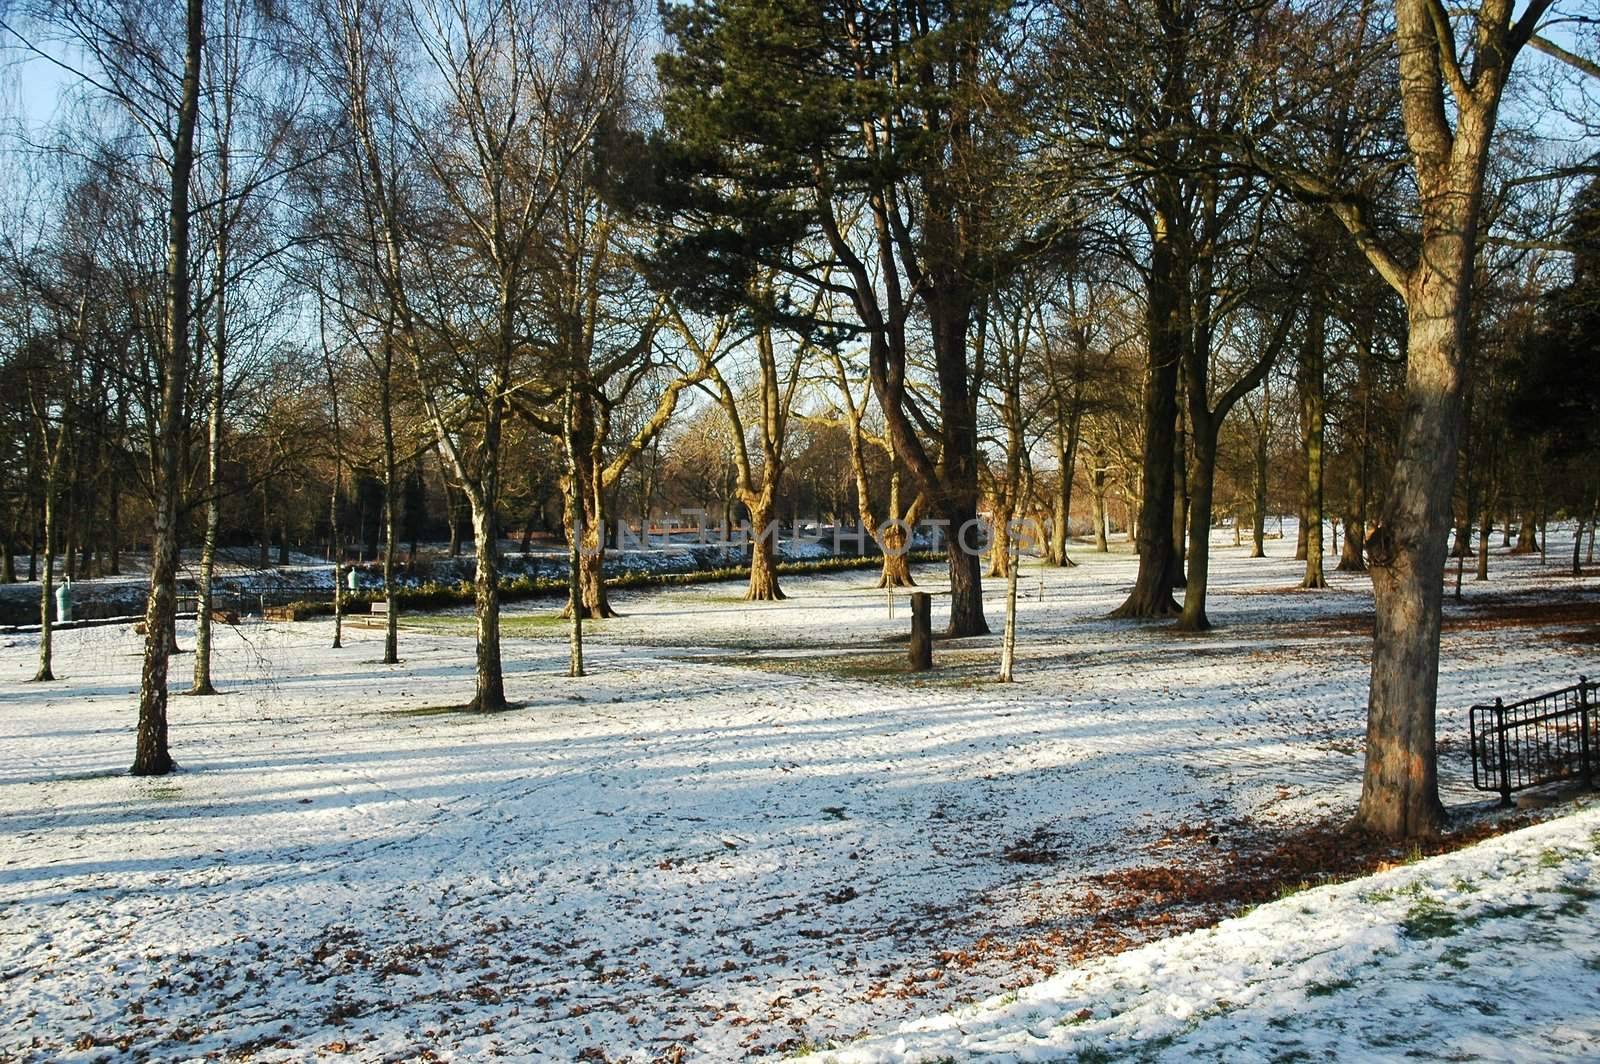 Cardiff park by lehnerda